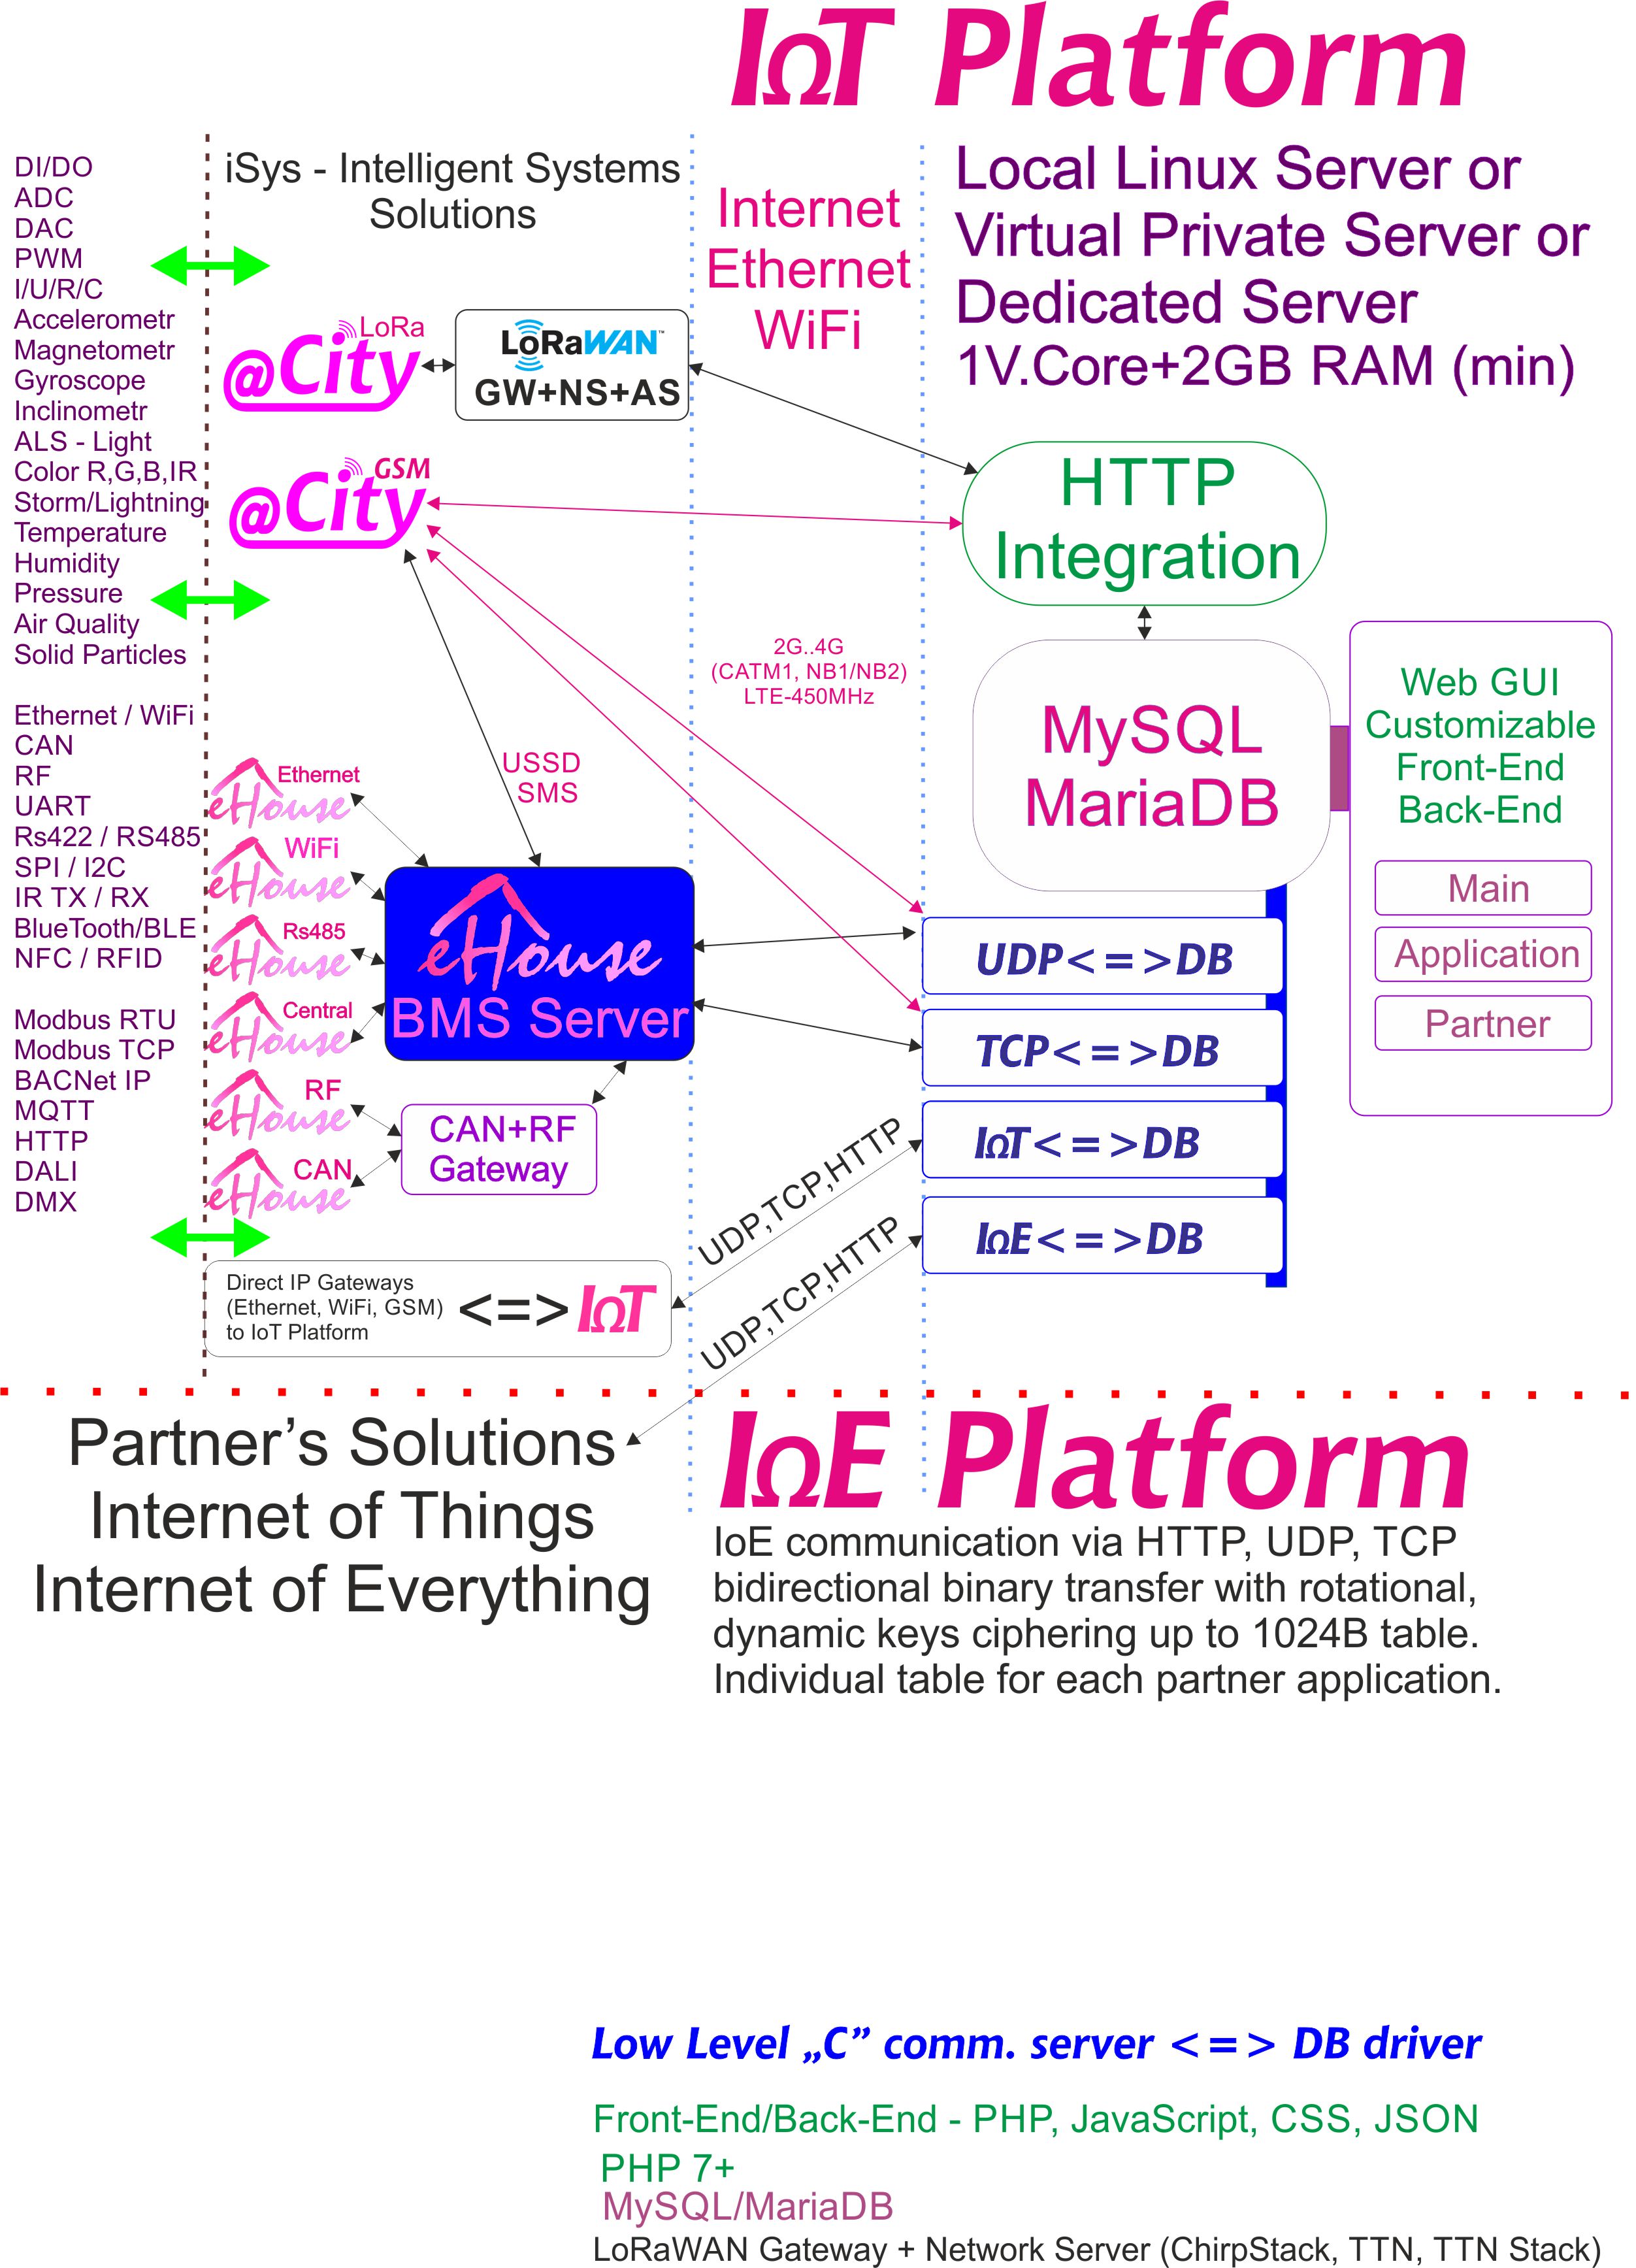 IoE, IoT პლატფორმა, რომელიც განკუთვნილია თითოეული პარტნიორისთვის, ინდივიდუალური შიფრირებით